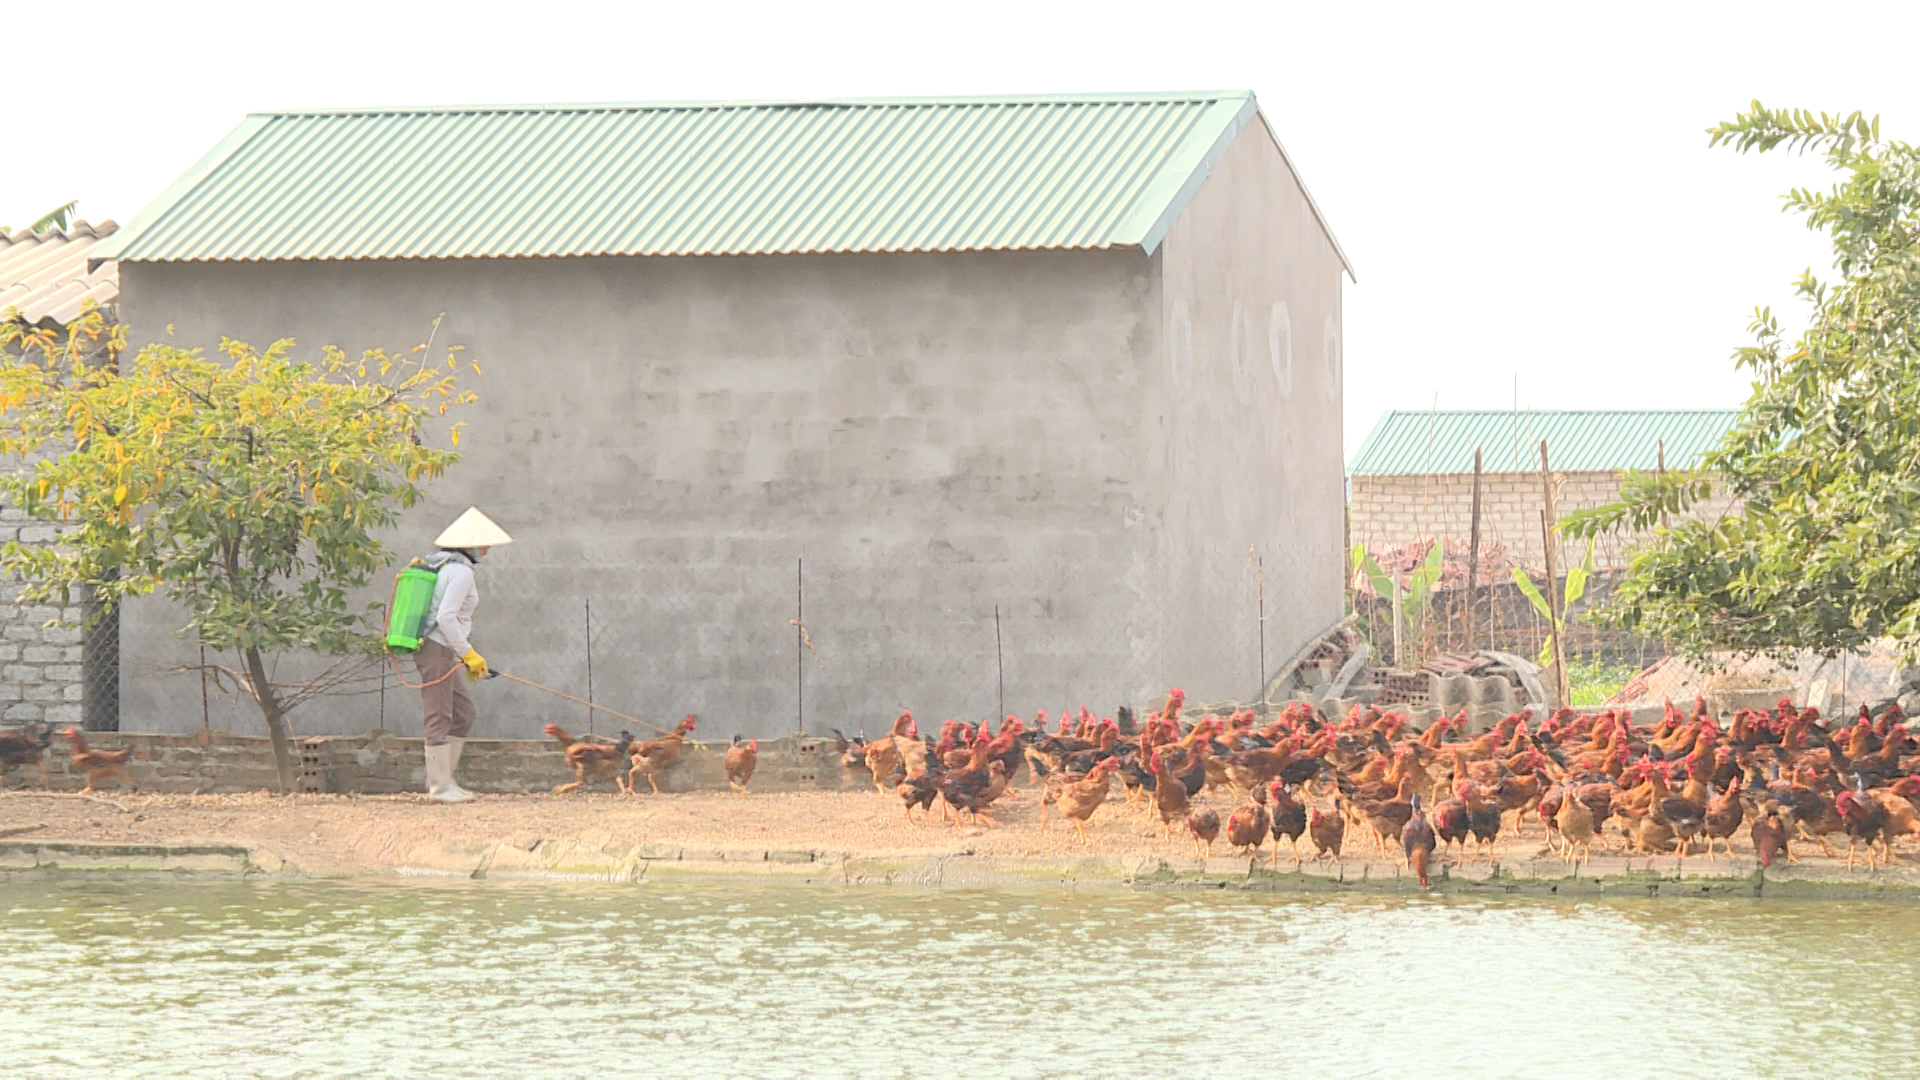 Công tác vệ sinh chuồng trại, khử trùng tiêu độc môi trường được các hộ chăn nuôi chú trọng.